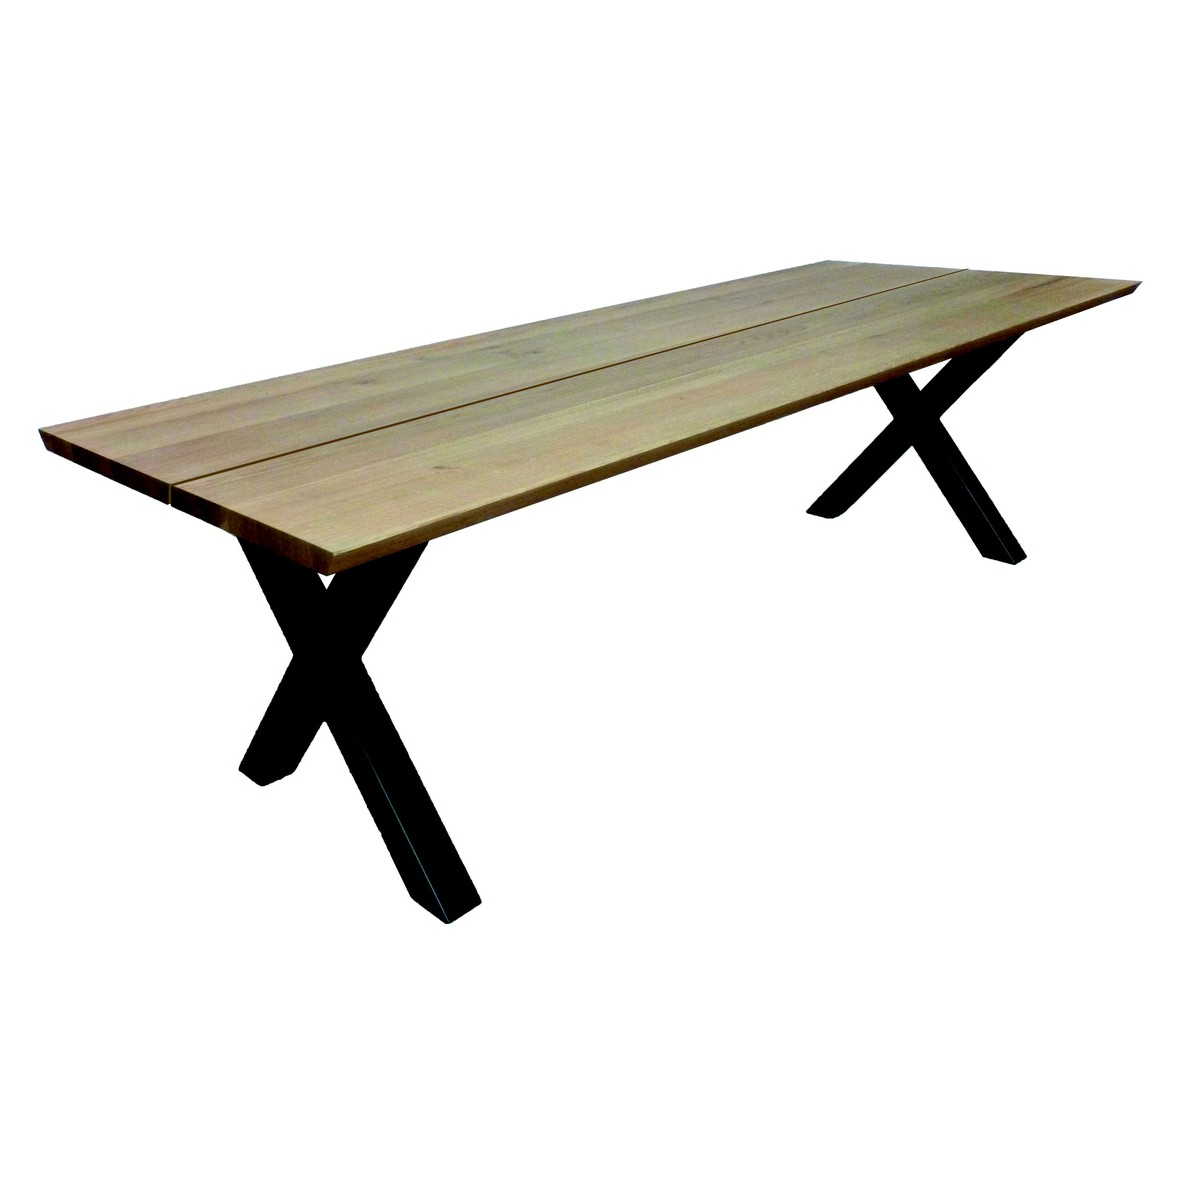   Table de bar Celi Seven ouverte rectangulaire  160x100x110cm